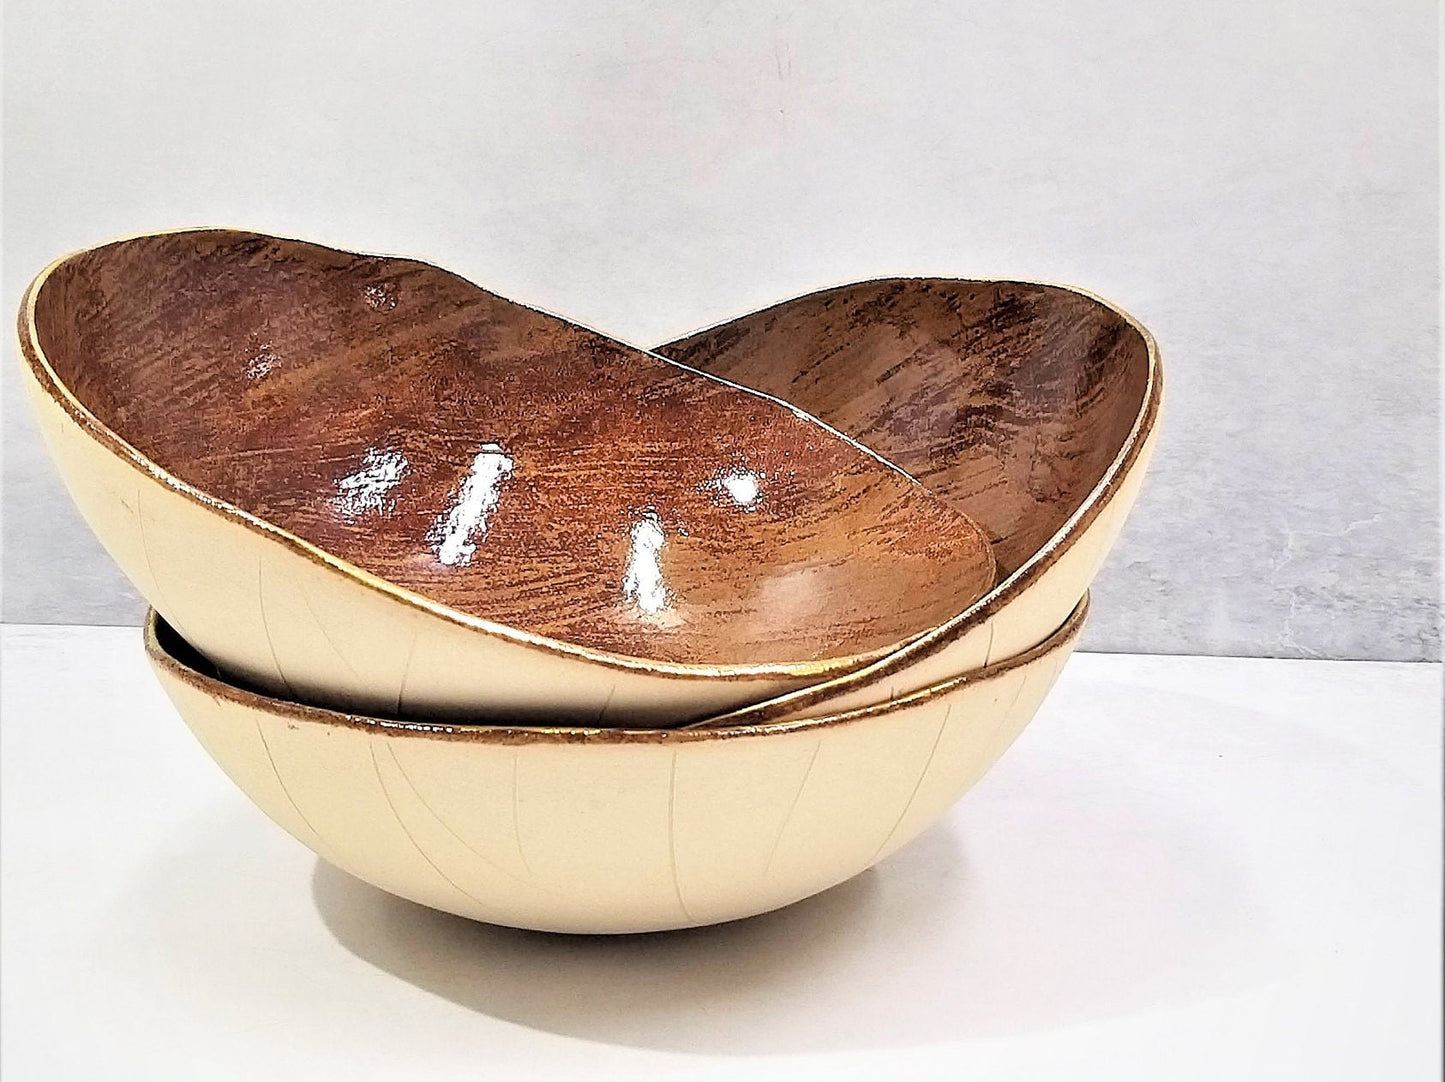 Brown toned ceramic bowl with gold rim